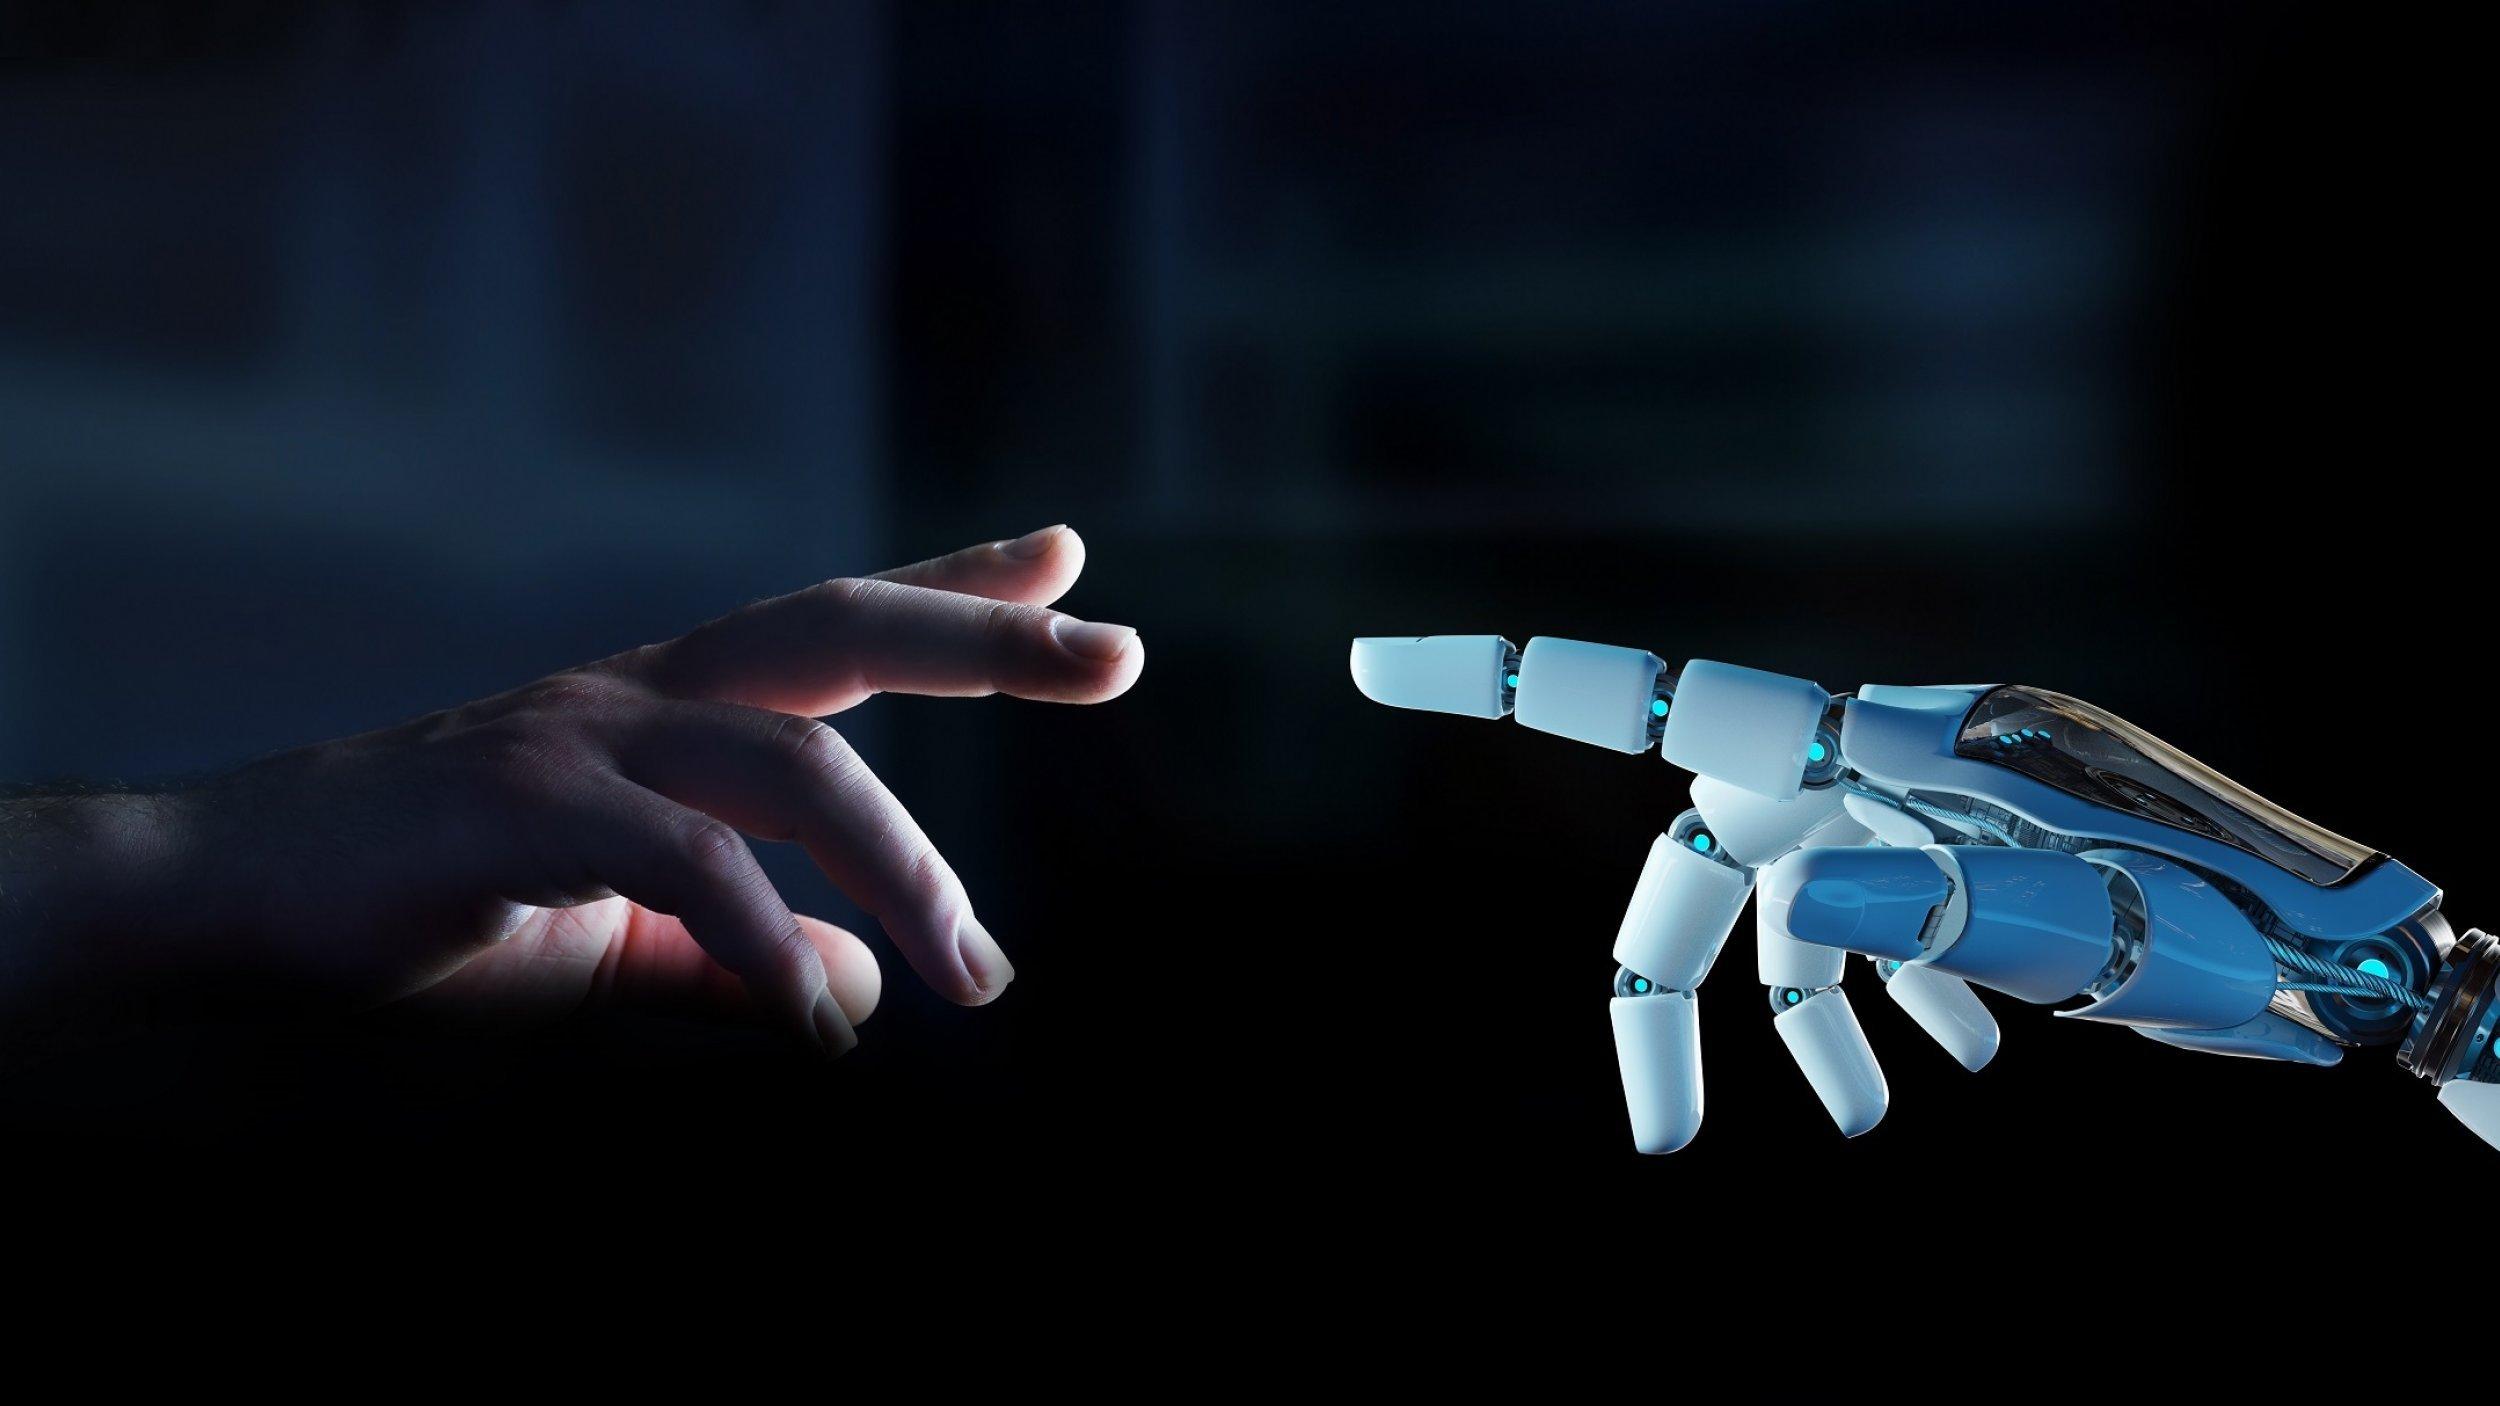 Ein weißer Roboterfinger ist kurz davor, einen menschlichen Finger zu berühren, der sich ihm vor dunklem Hintergrund entgegenstreckt.